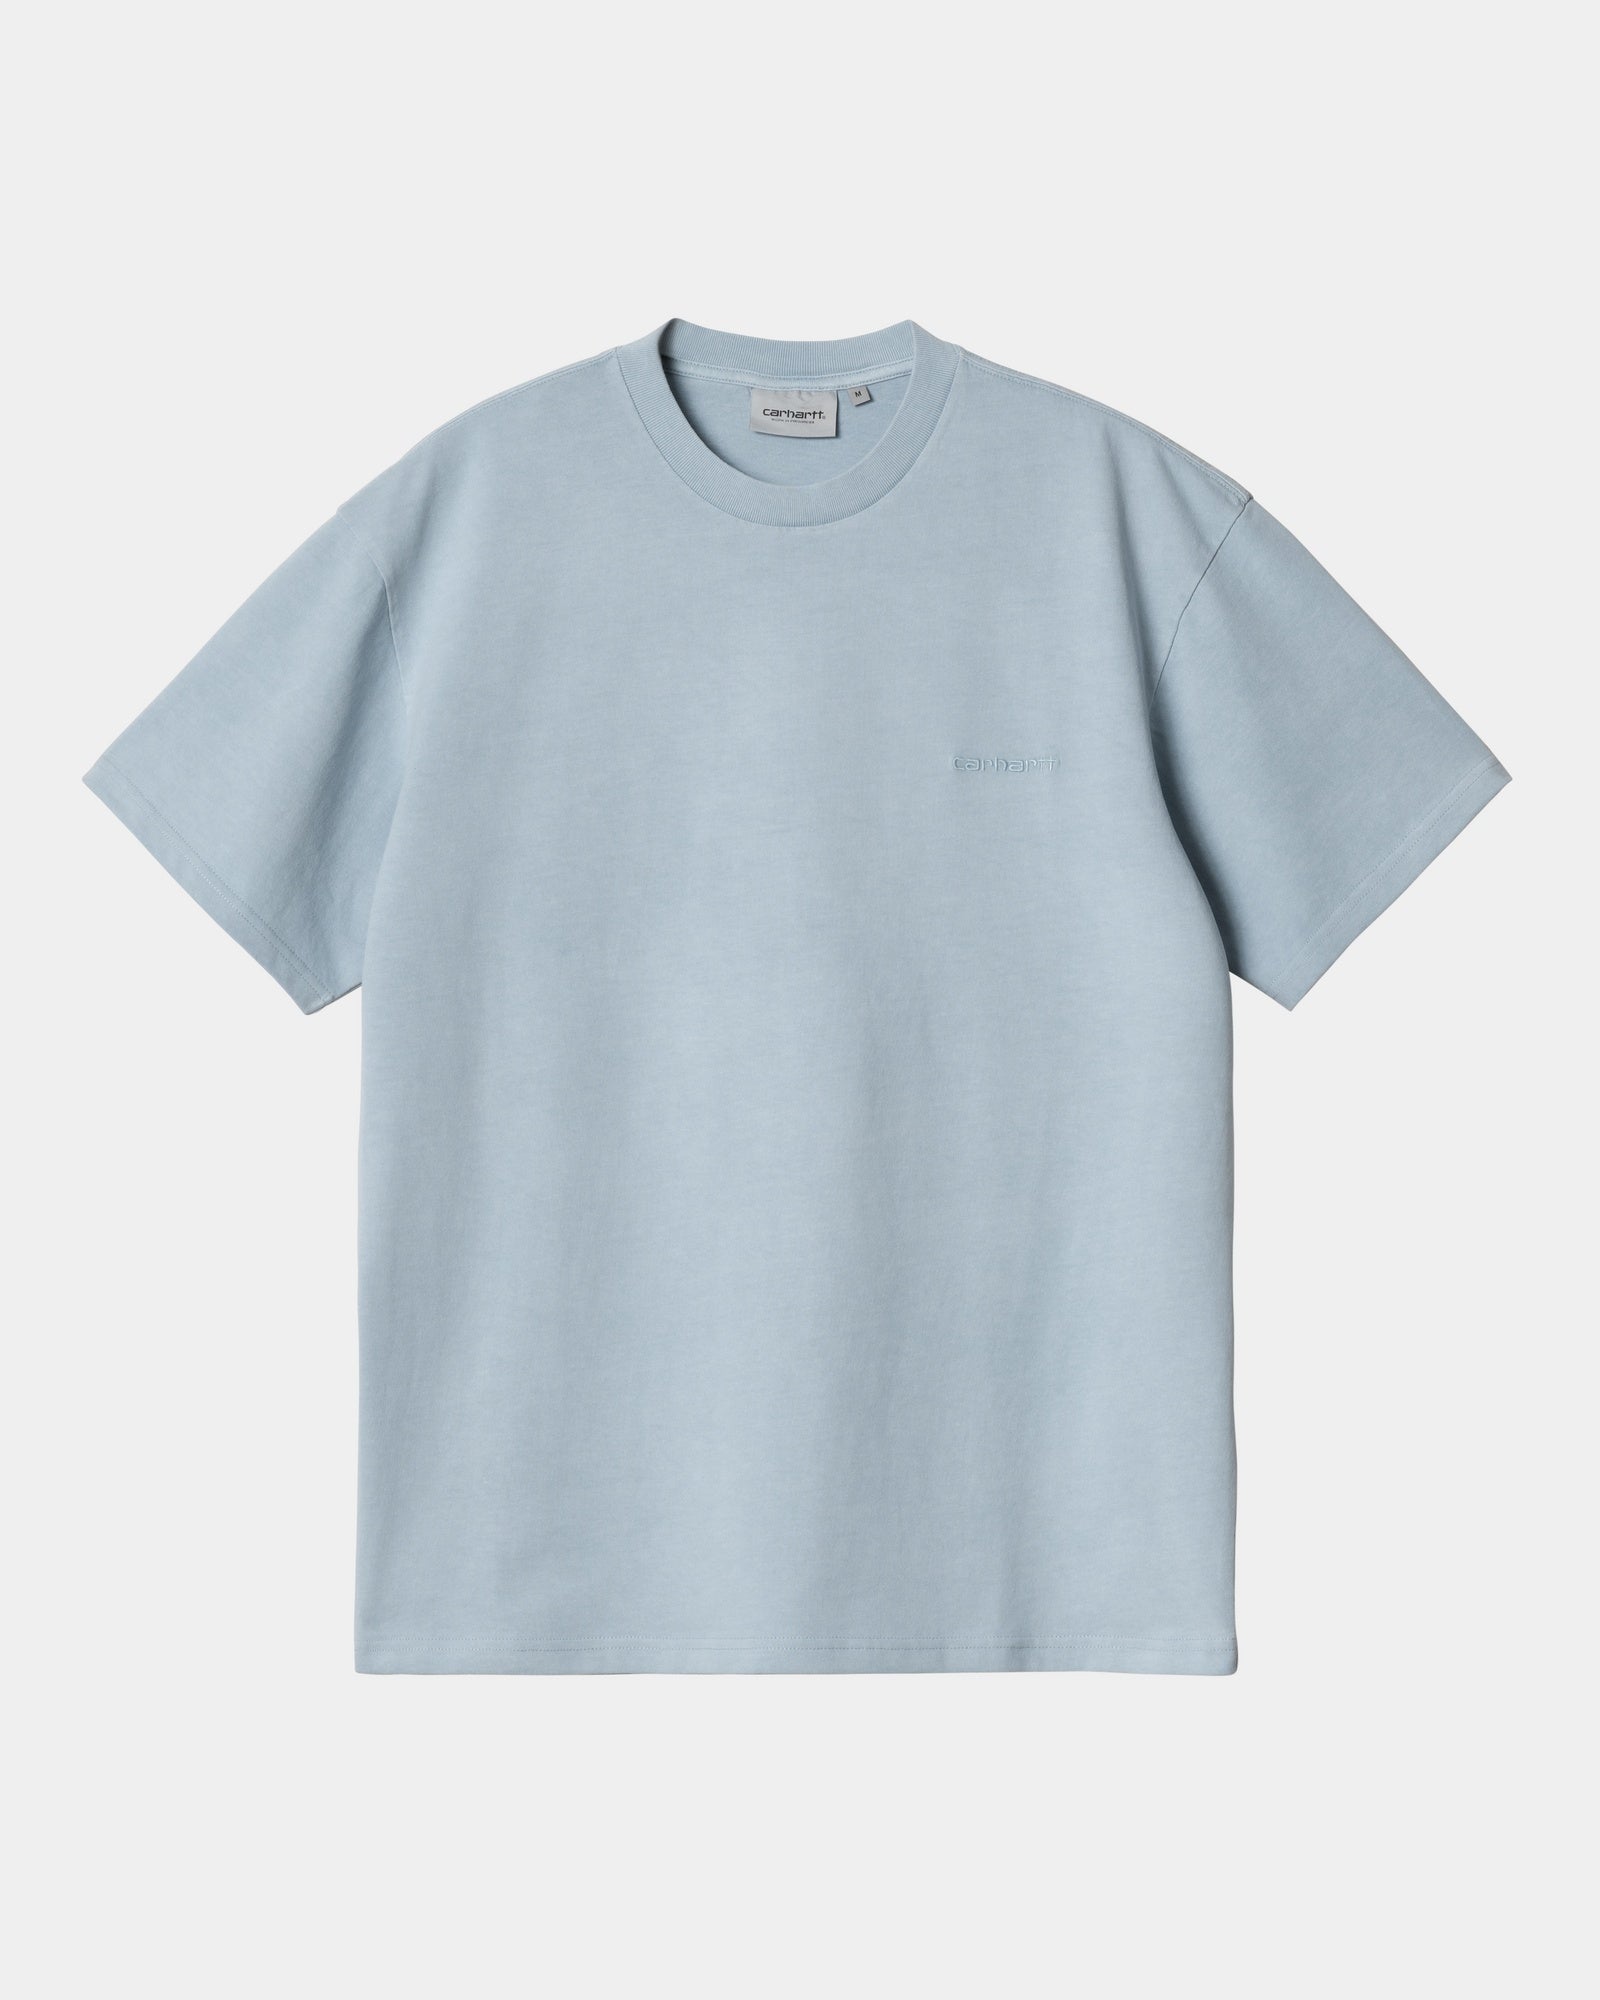 칼하트WIP Carhartt Duster Script T-Shirt,Misty Sky garment dyed